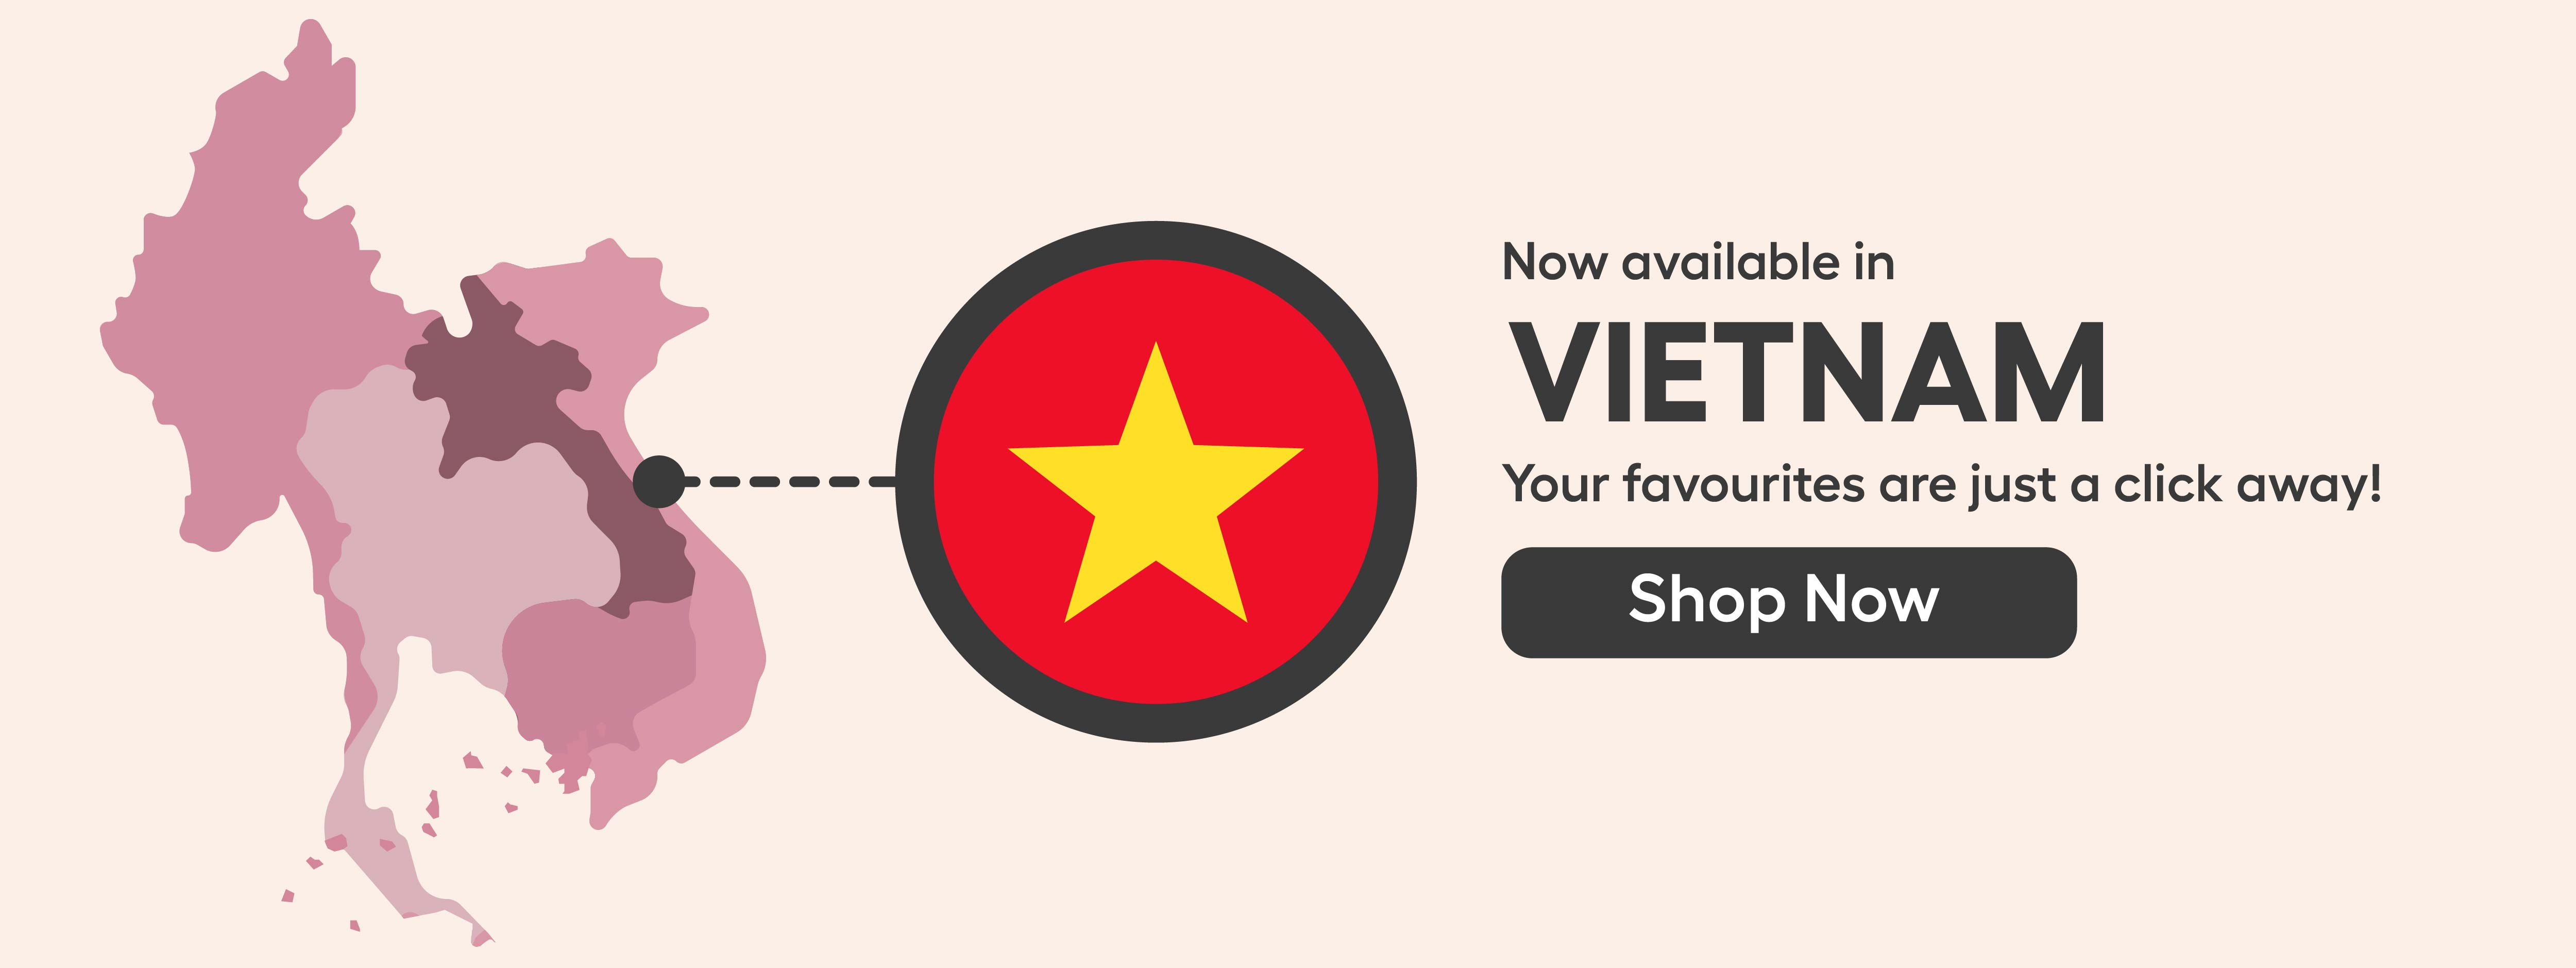 Vietnam Map Landing